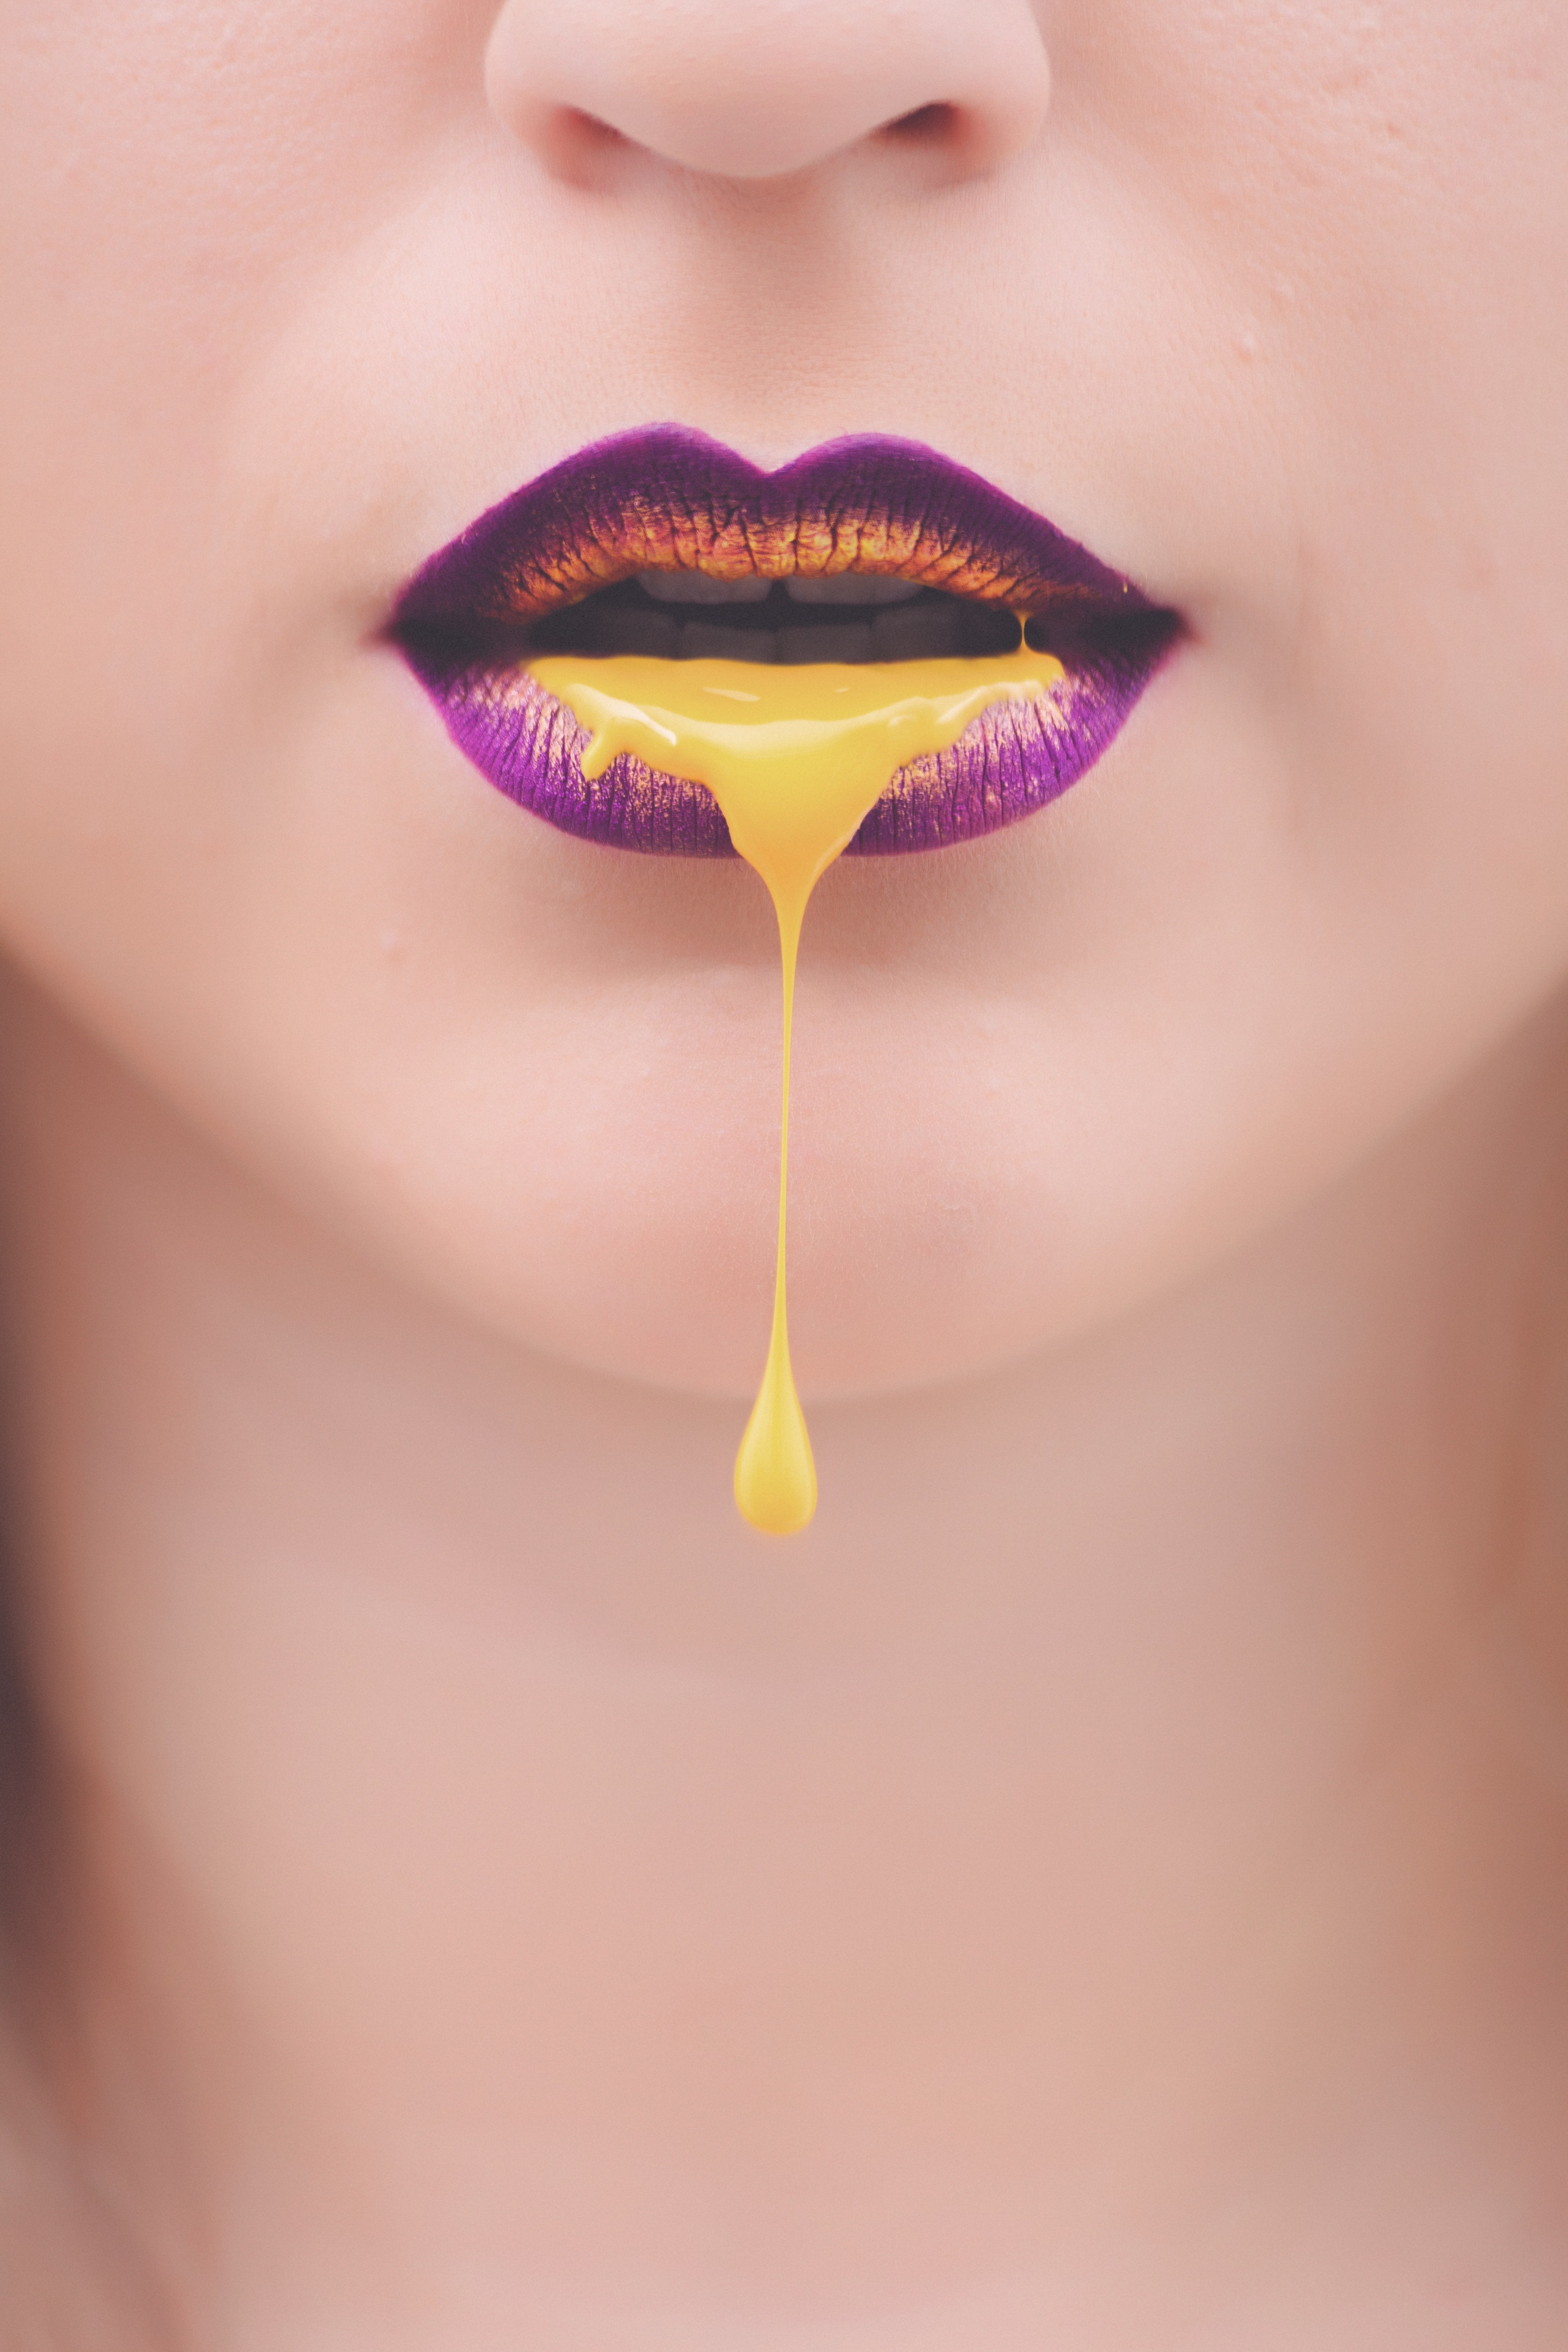 Women's purple and yellow lips with yellow liquid photo